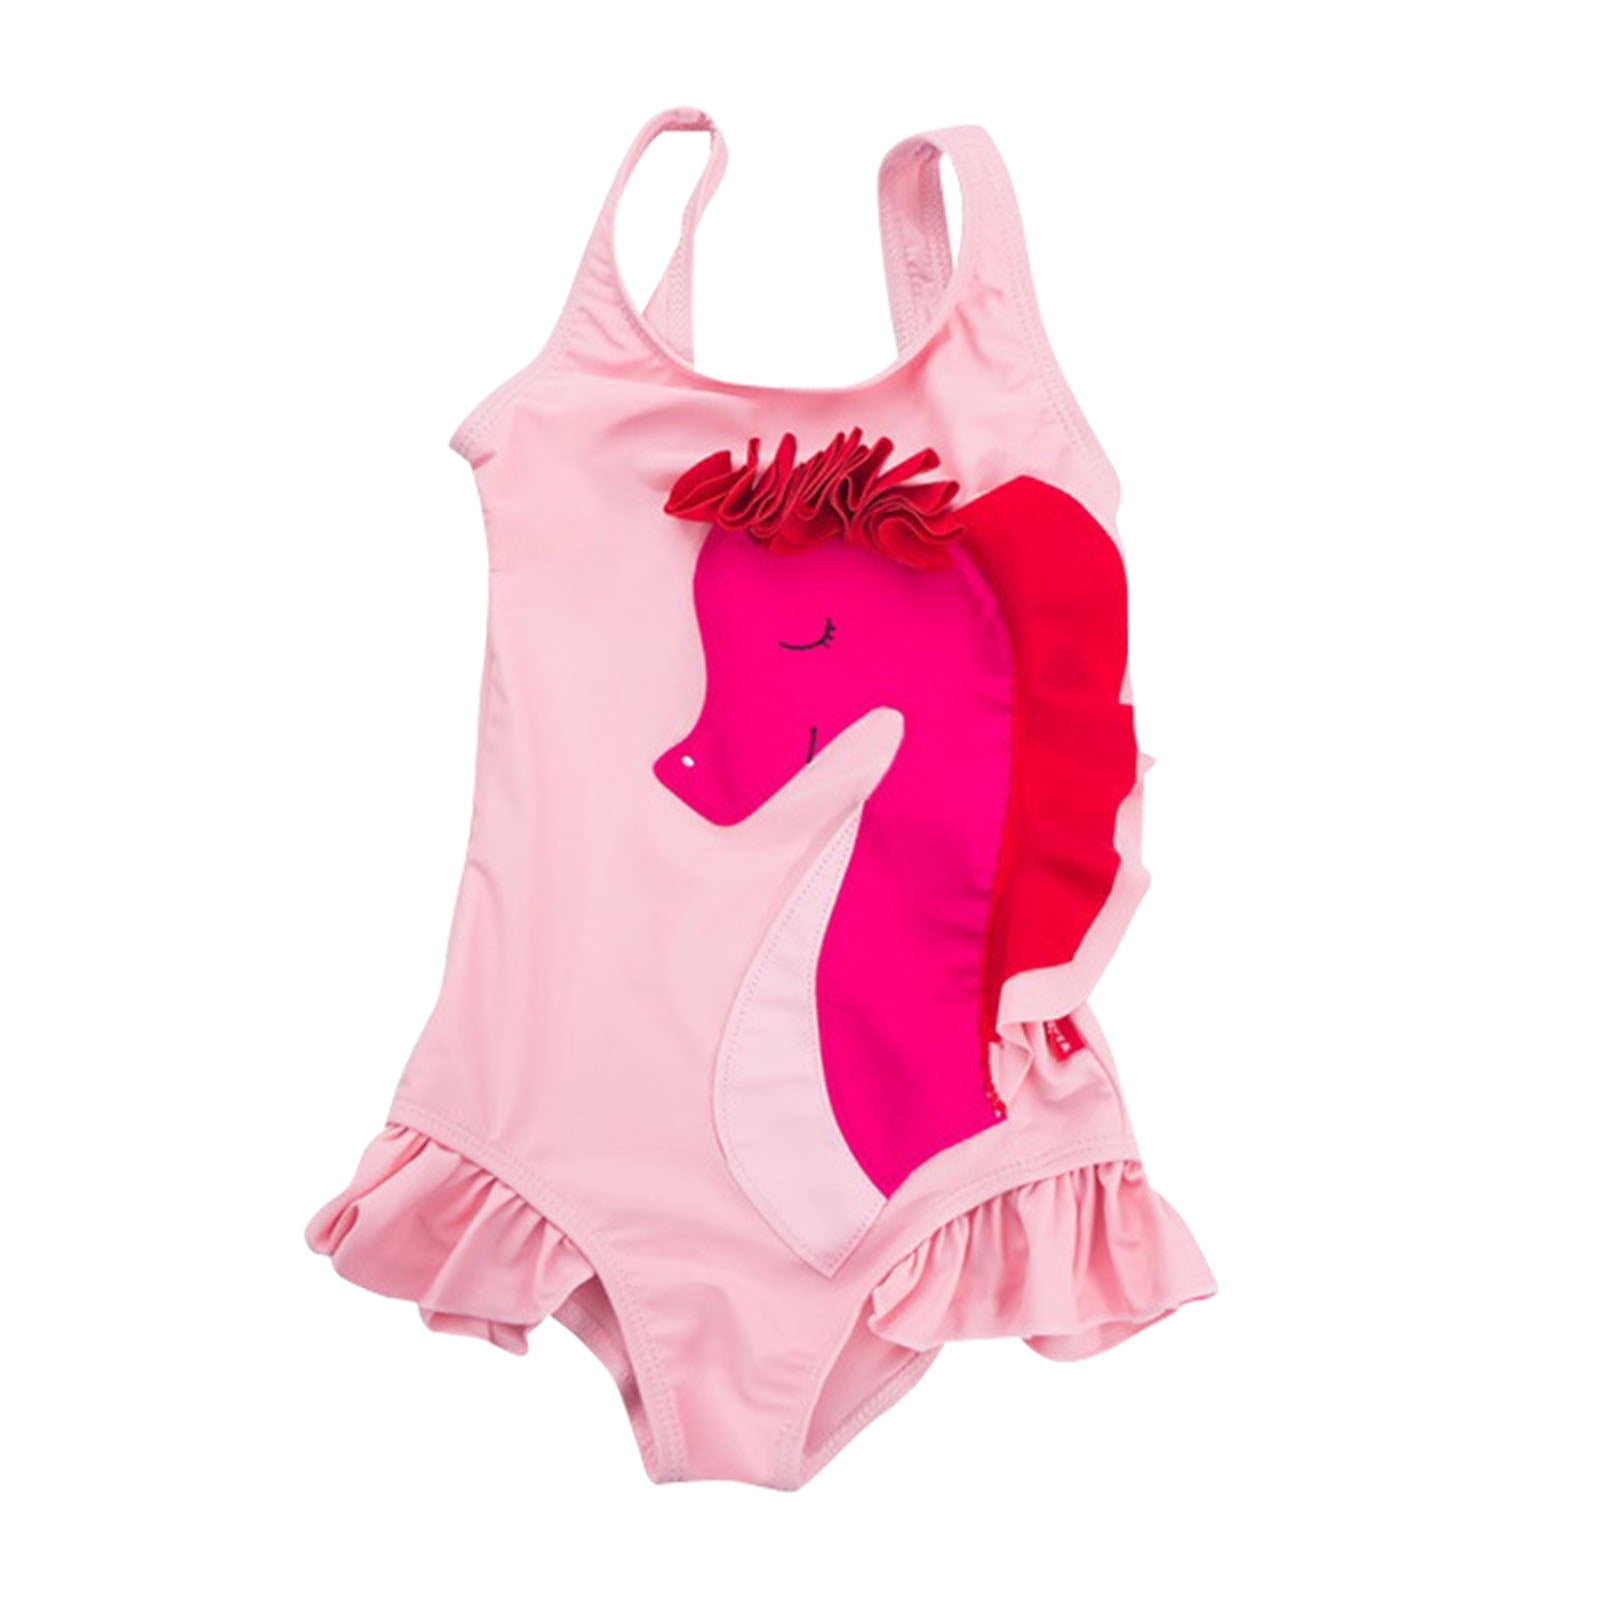 Neon Toddler Swimsuit Girl Size Xxl Cartoon Animal Beachwear Swimwear ...